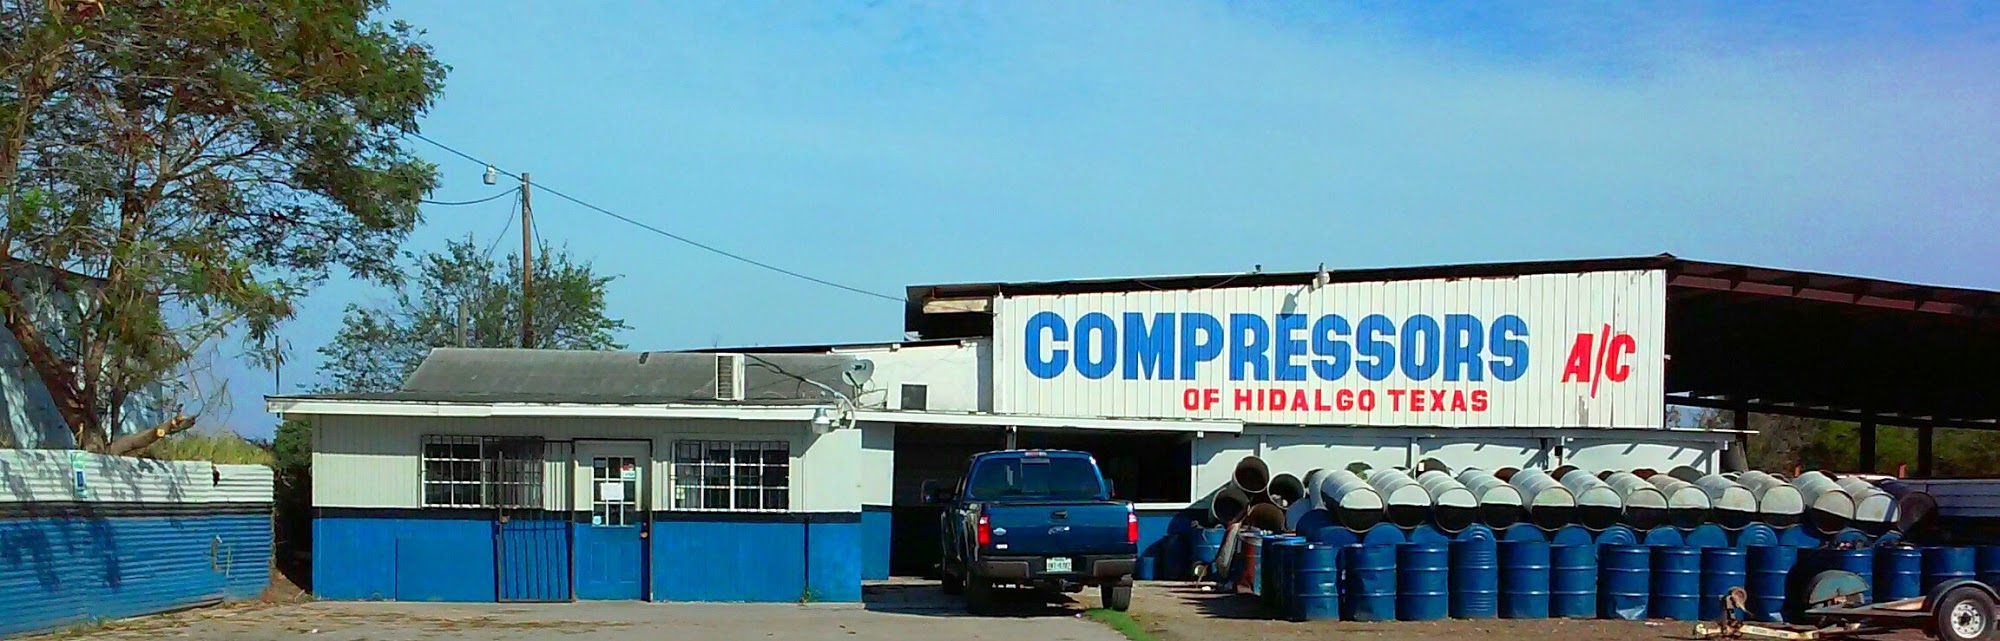 Compressors A/C of Hidalgo Texas & used parts